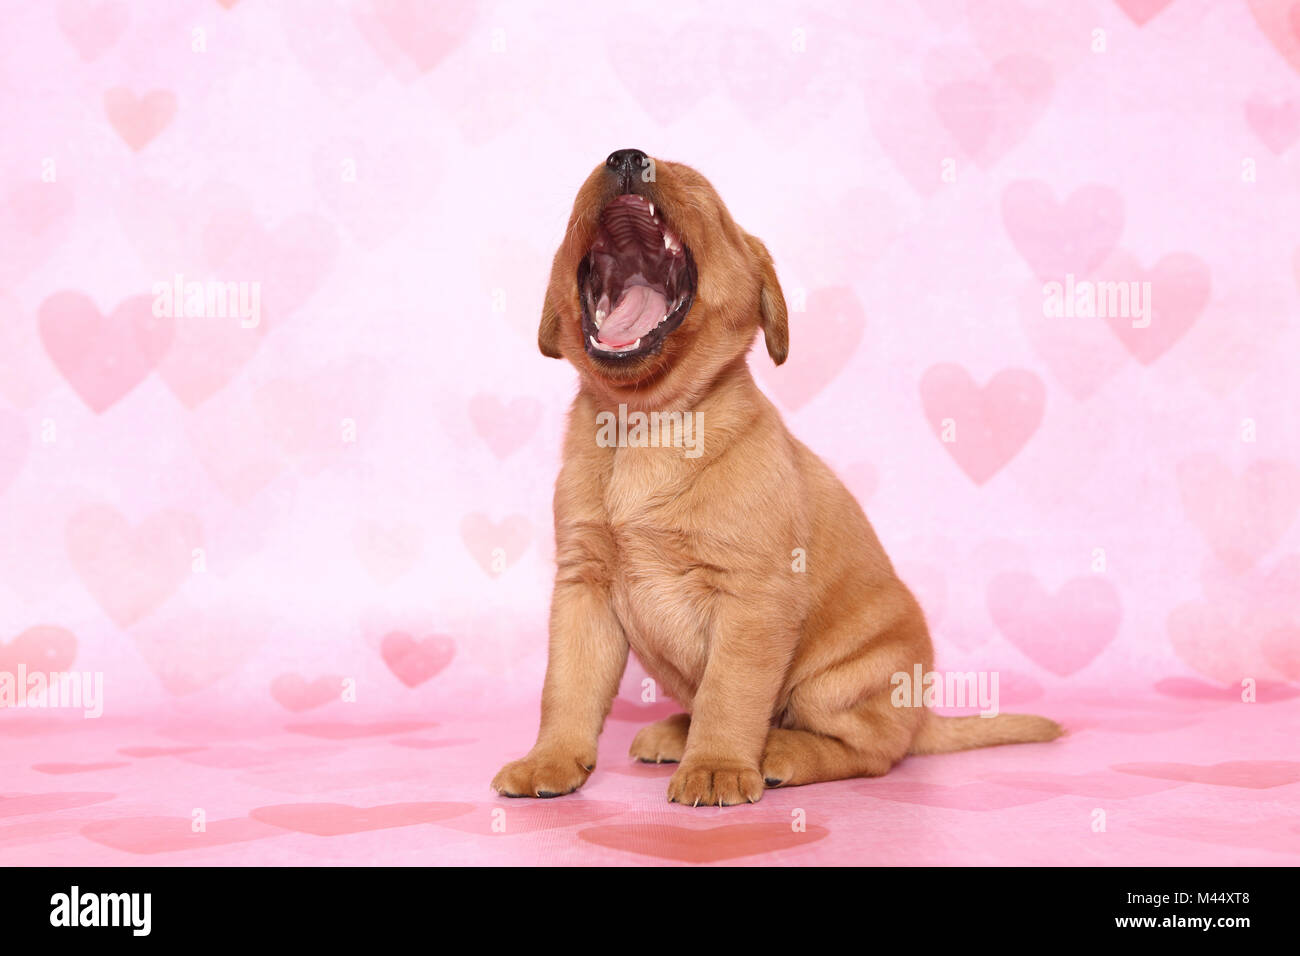 Labrador Retriever. Puppy (6 semaines) assis tout en bâillant. Studio photo sur un fond rose avec coeur imprimer. Allemagne Banque D'Images